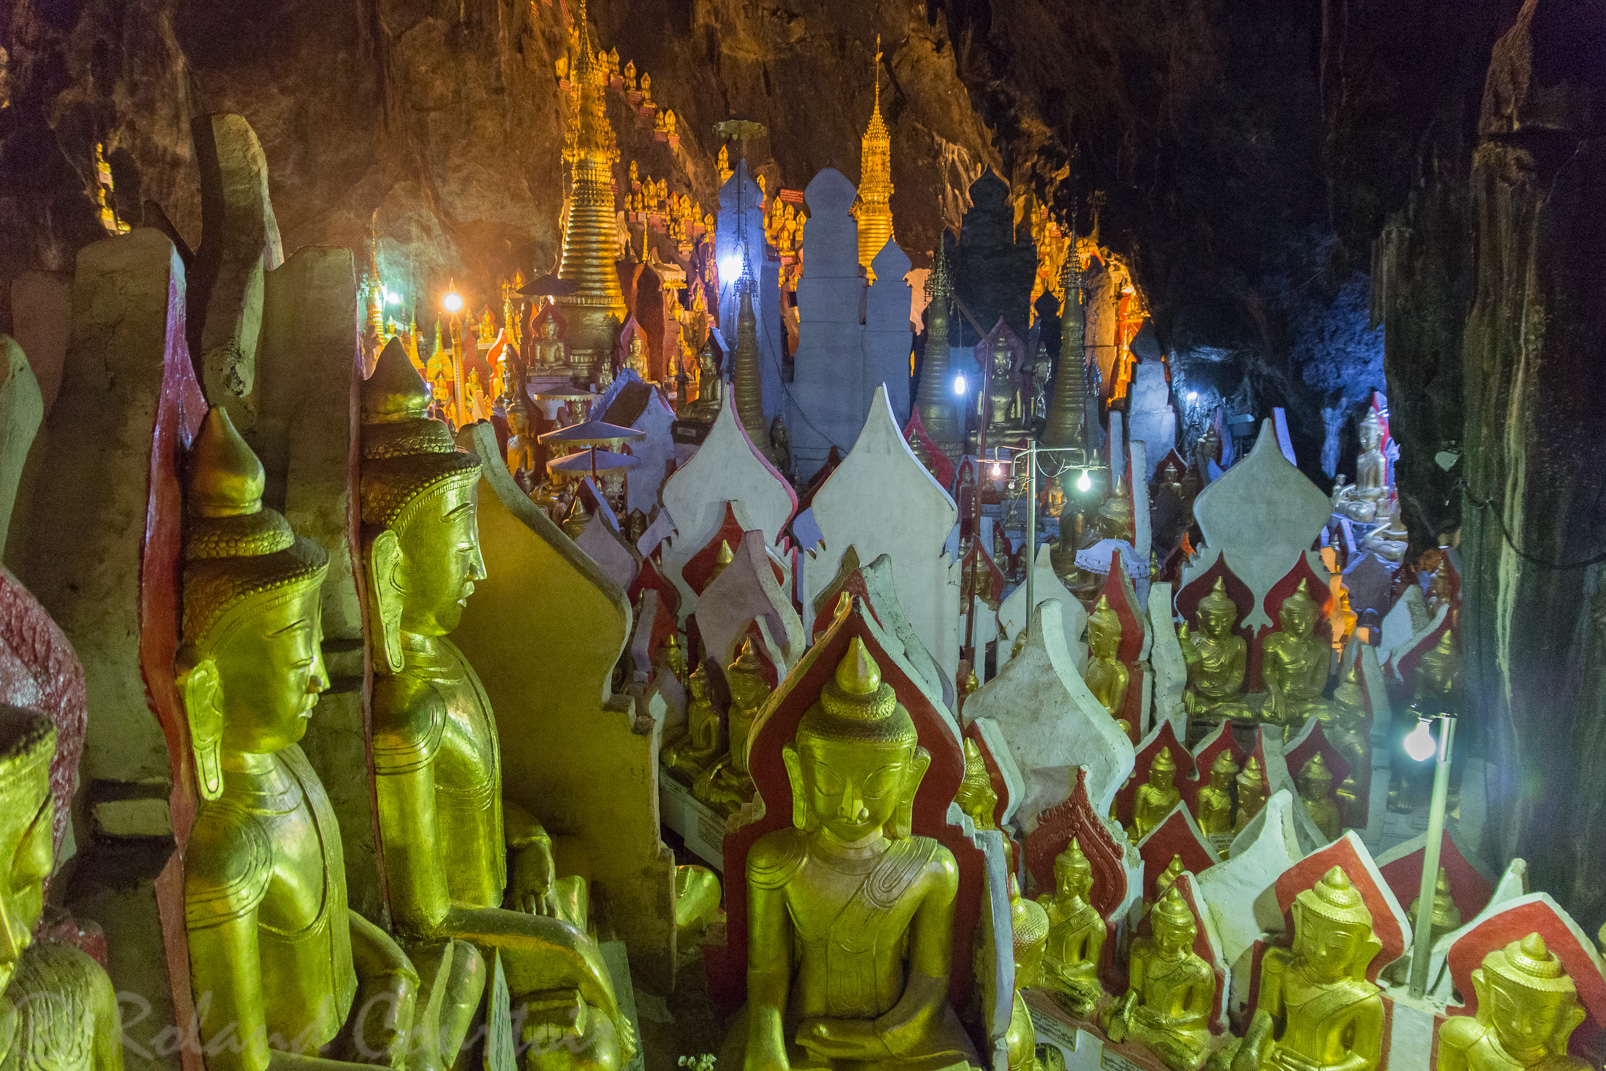 Grottes bouddhiques de Shwe-U min qui contiennent des milliers de statues de bronze, de bois ou de pierre, accumulées au fil des siècles par les pèlerins.